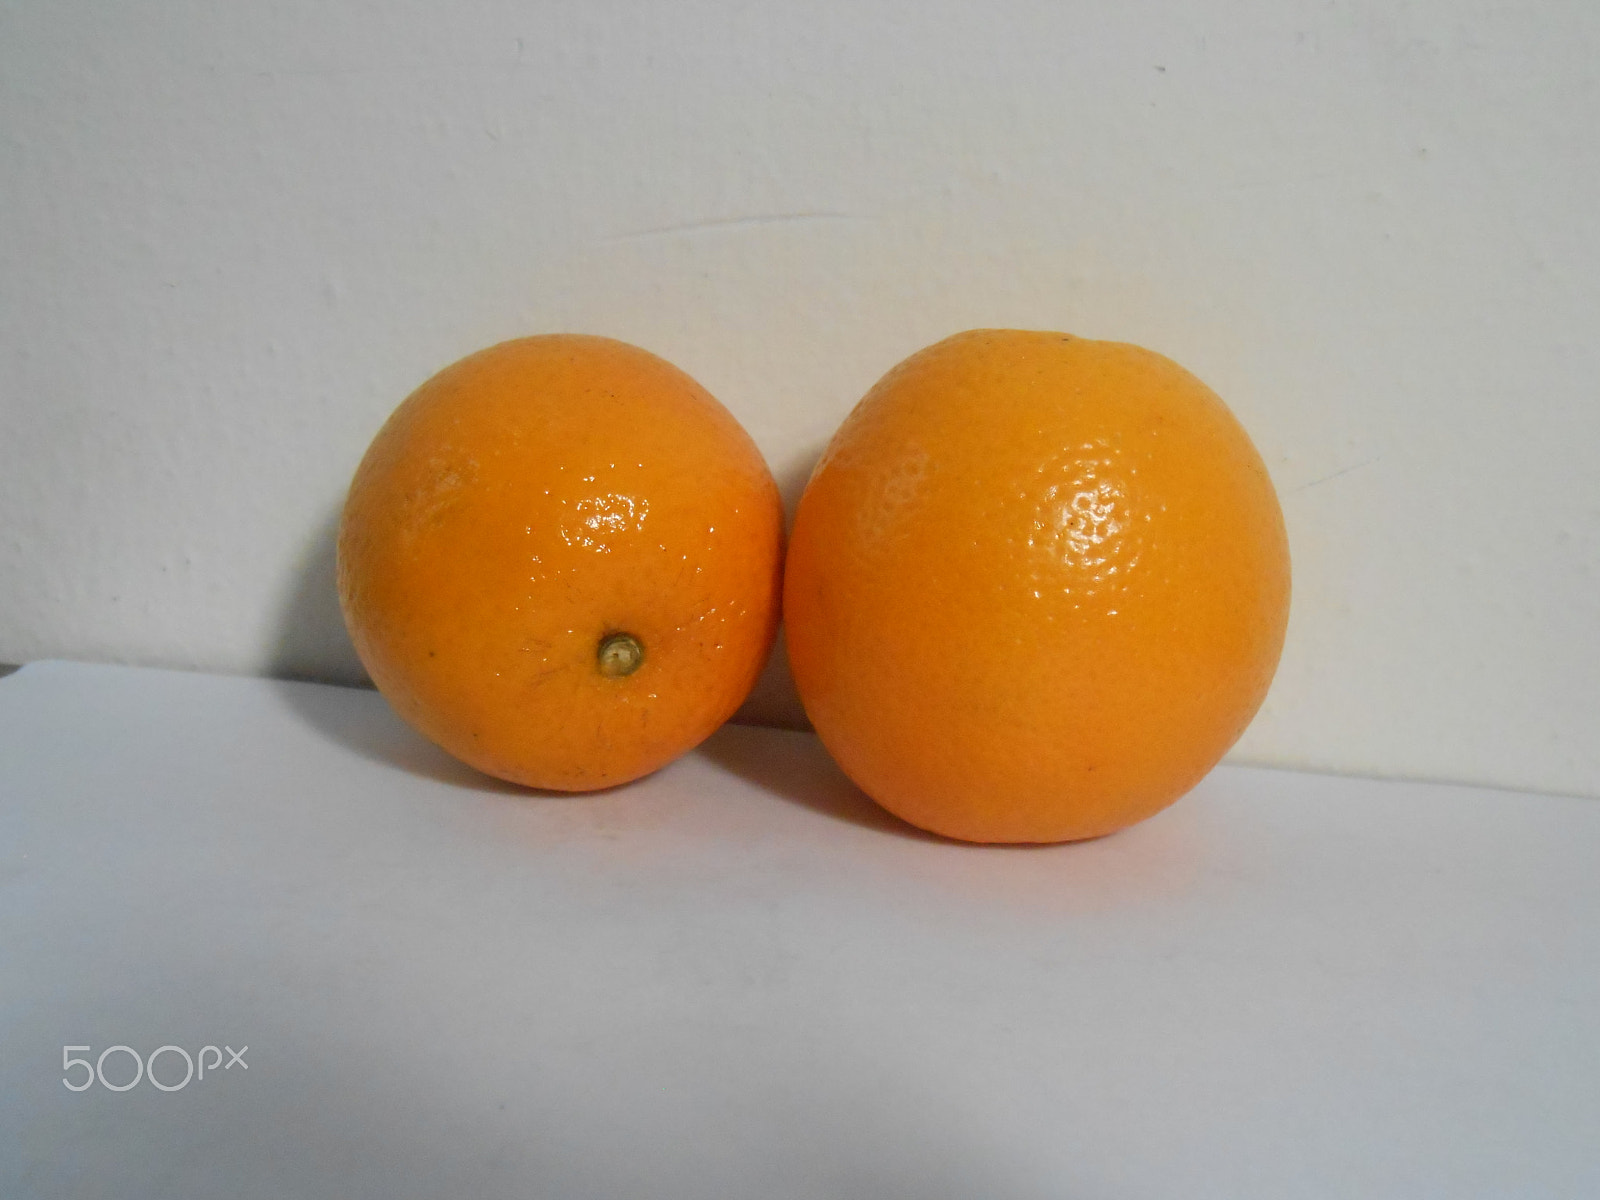 Nikon Coolpix S4300 sample photo. Naranjas completas photography